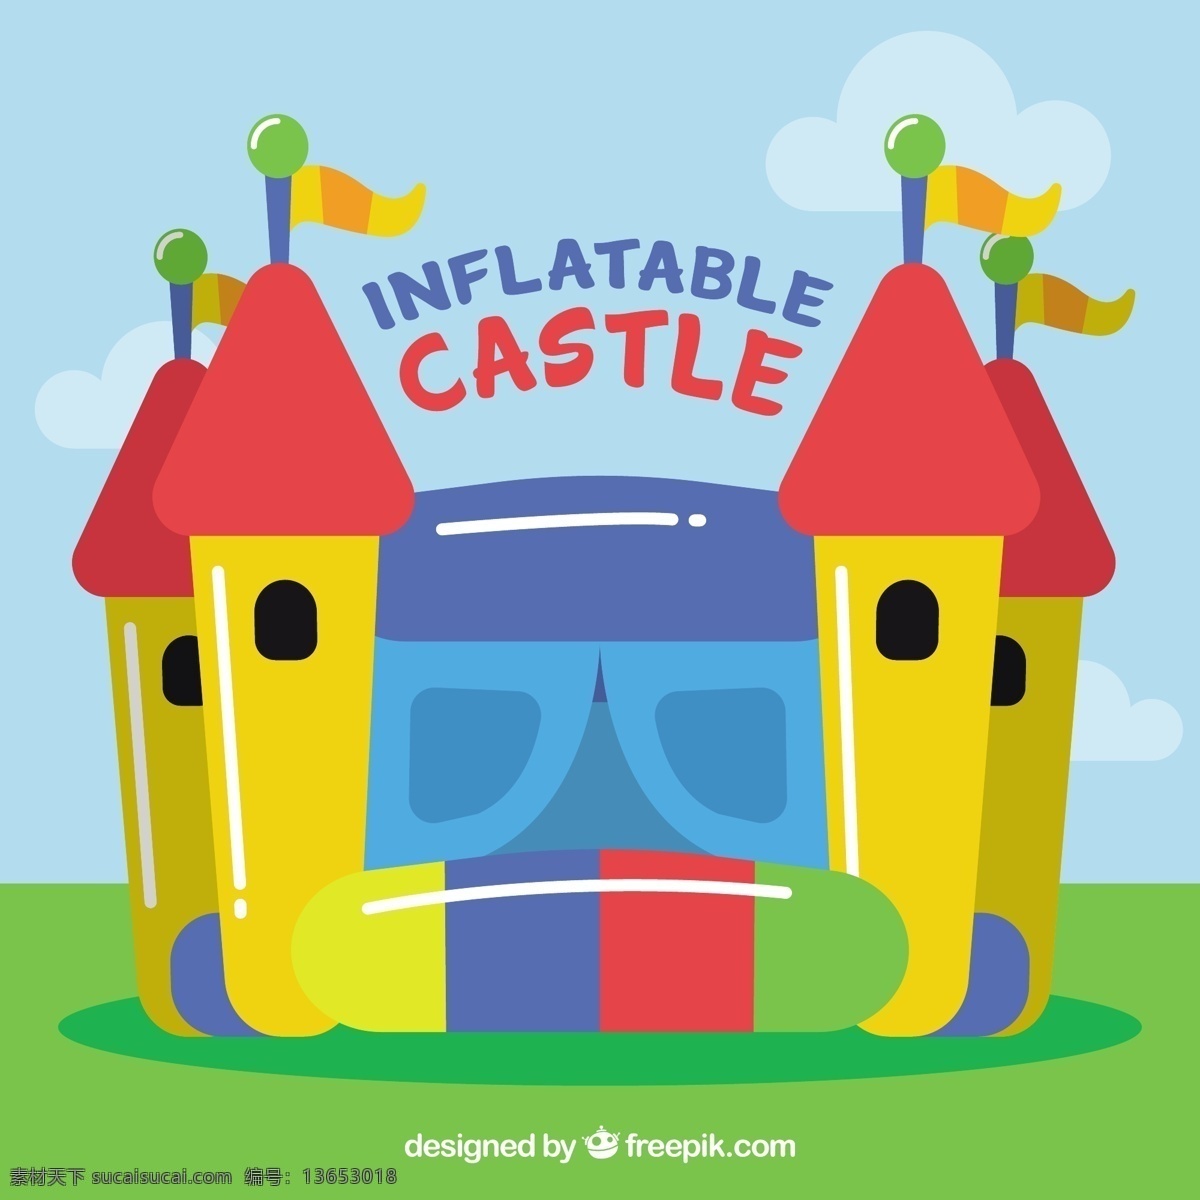 彩色 充气 城堡 背景 夏季 节日 五颜六色 玩具 游泳池 娱乐 度假 空气 塑料 季节 物品 漂浮物 床垫 季节性 漂浮 享受